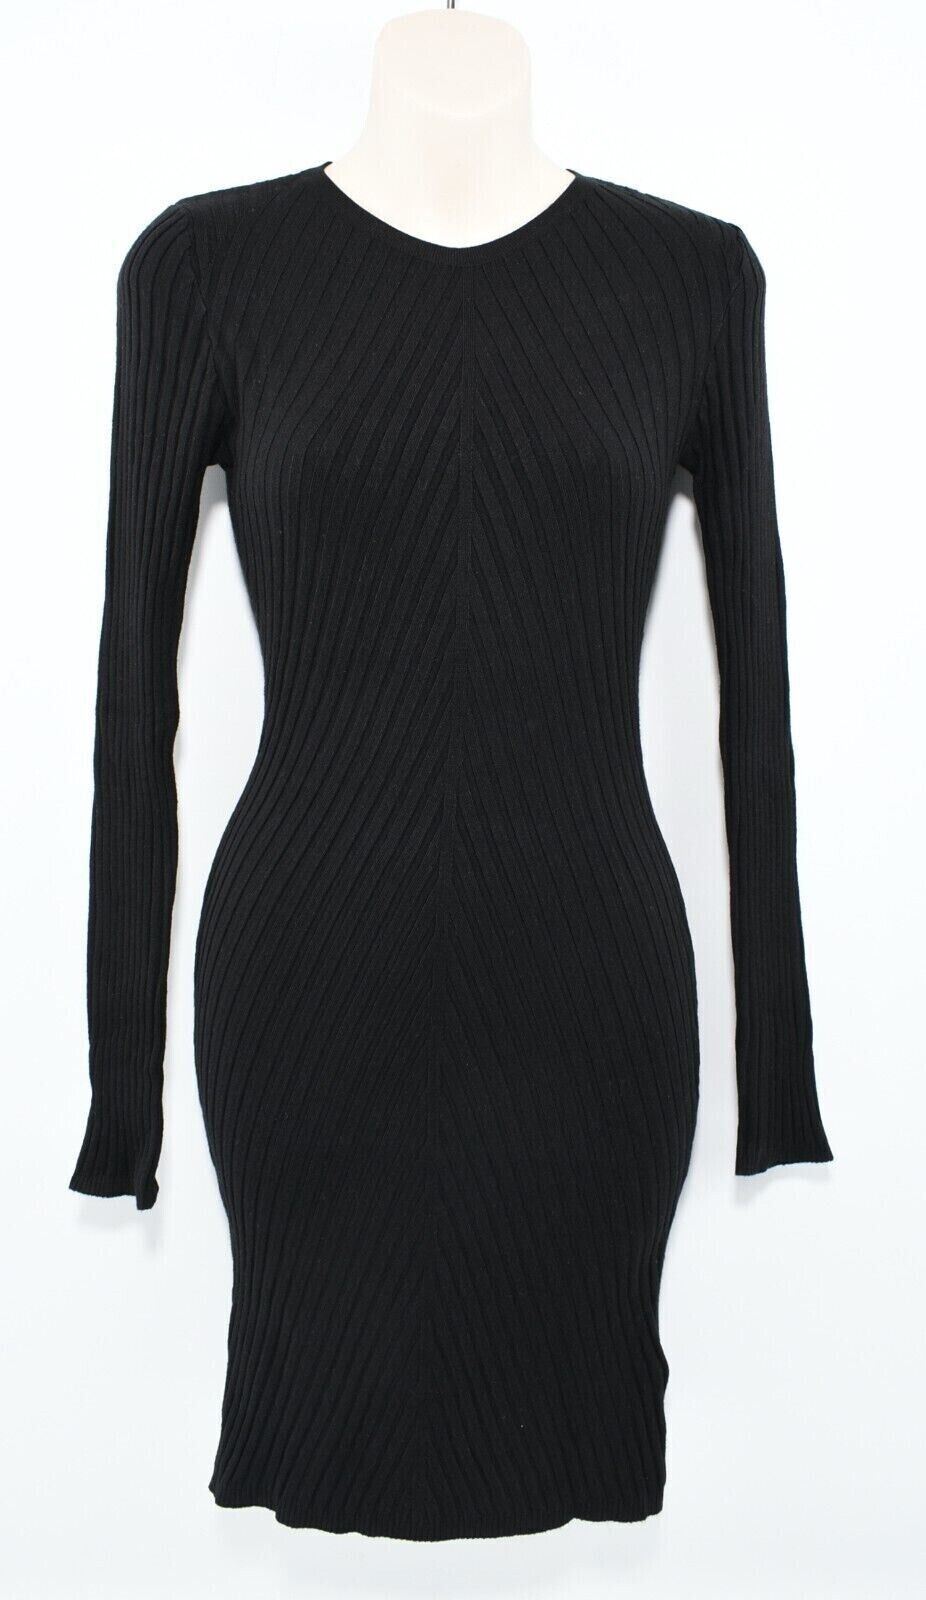 KANGOL Womens Stretch Rib Knit Fitted Dress, Black, size M /UK 12